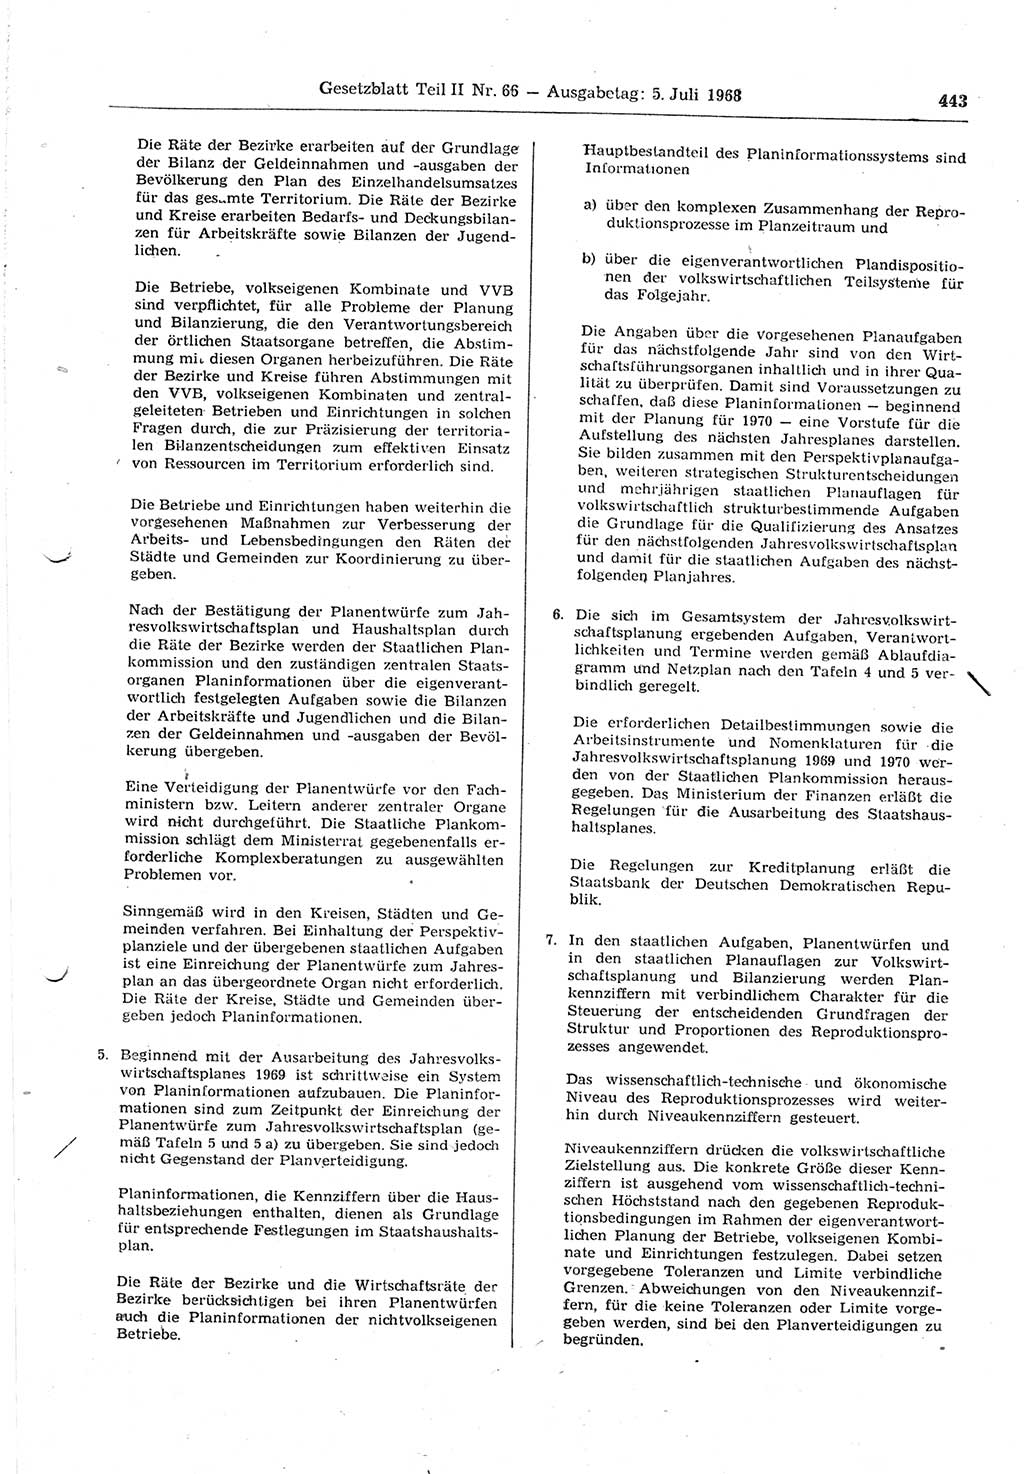 Gesetzblatt (GBl.) der Deutschen Demokratischen Republik (DDR) Teil ⅠⅠ 1968, Seite 443 (GBl. DDR ⅠⅠ 1968, S. 443)